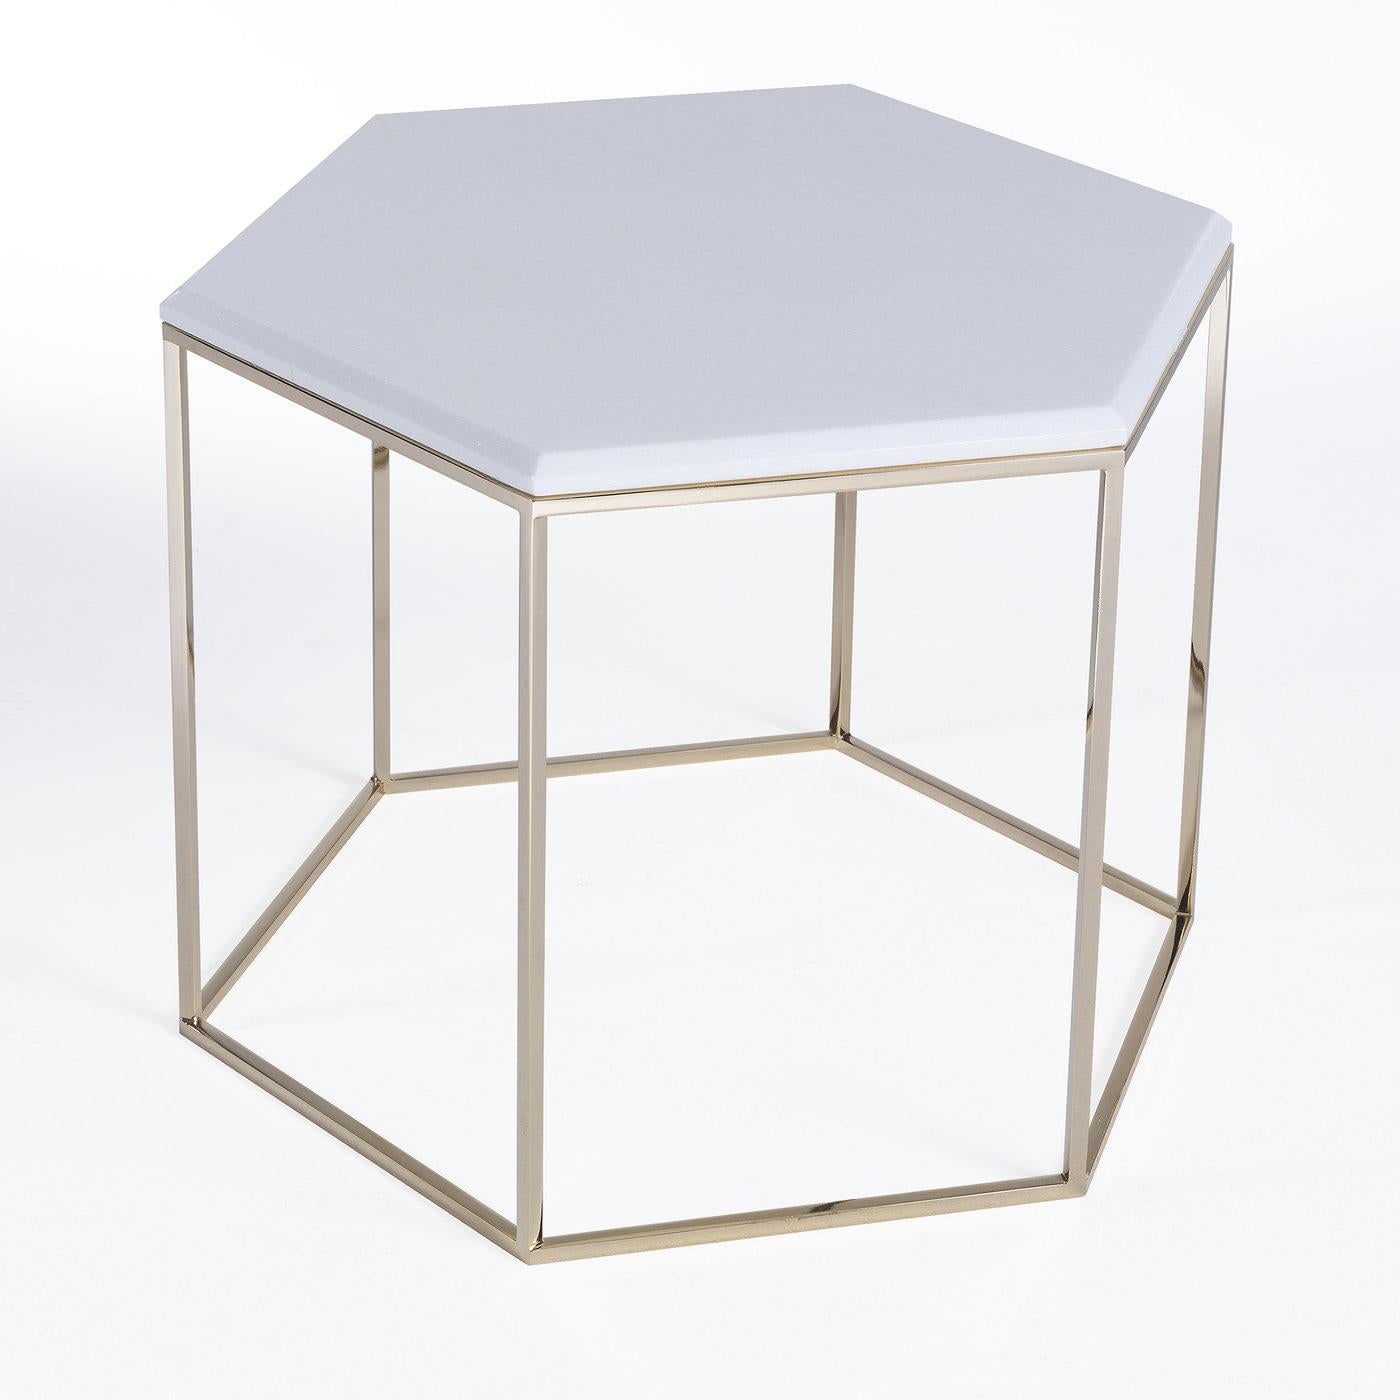 Fraîche et polyvalente, l'esthétique moderne de cette table d'appoint hexagonale convient à un salon minimaliste ou à un décor de patio. Le plateau hexagonal en marbre blanc de Sivec est soutenu par un cadre hexagonal ouvert en laiton, la